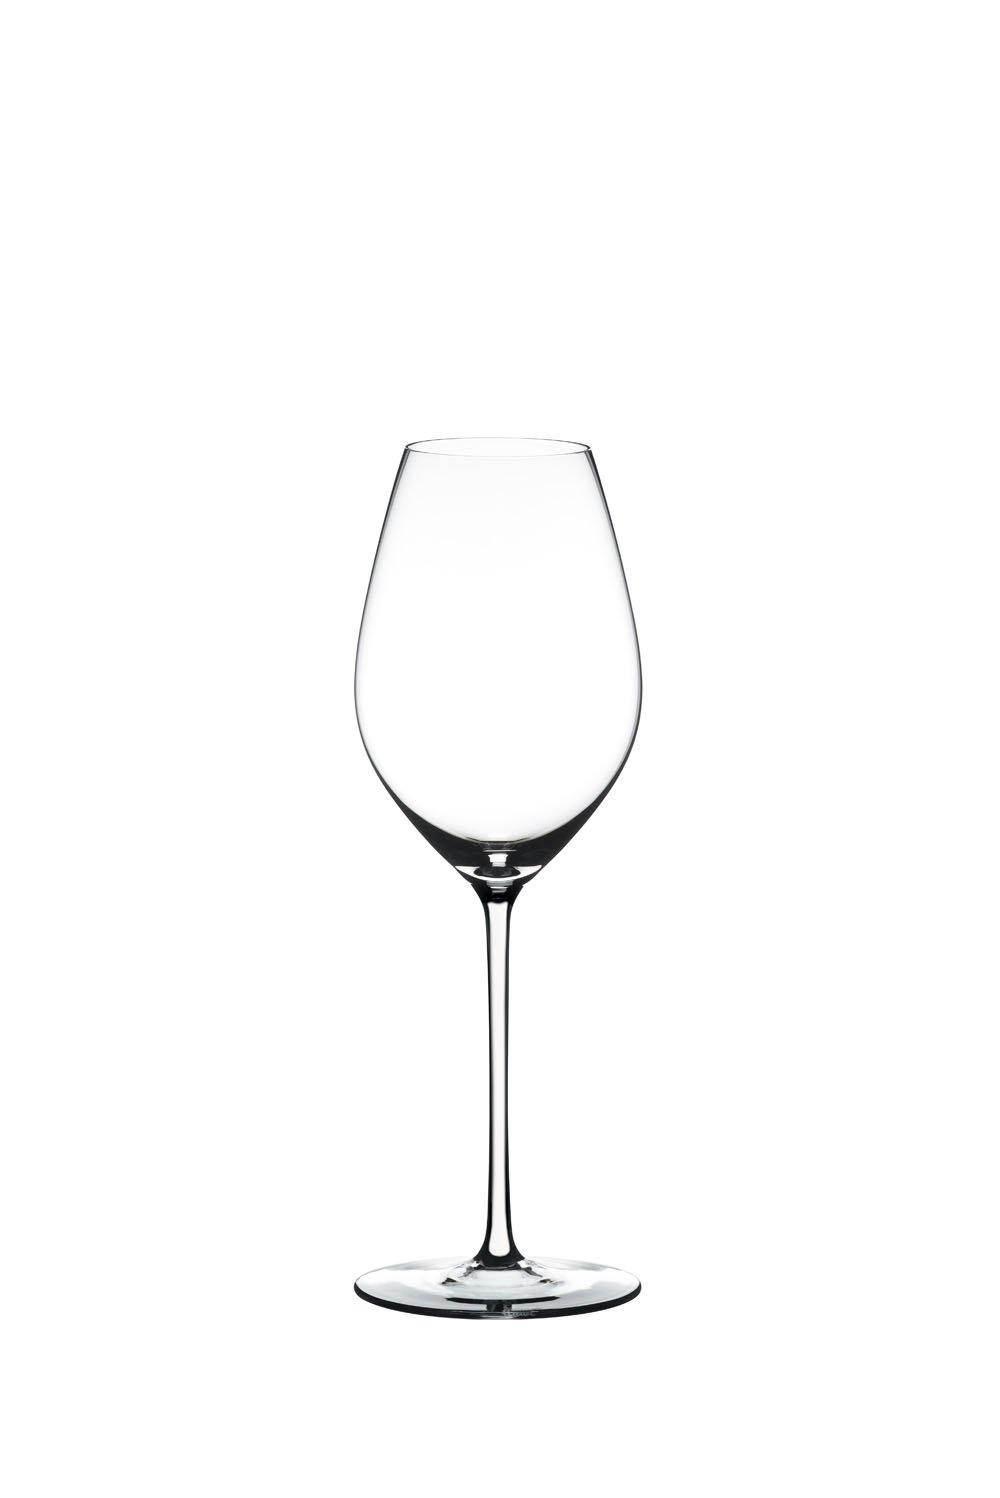 Riedel Fatto A Mano Champagne White Glass (Single) - {{ The Riedel Shop }} (4744809611401)